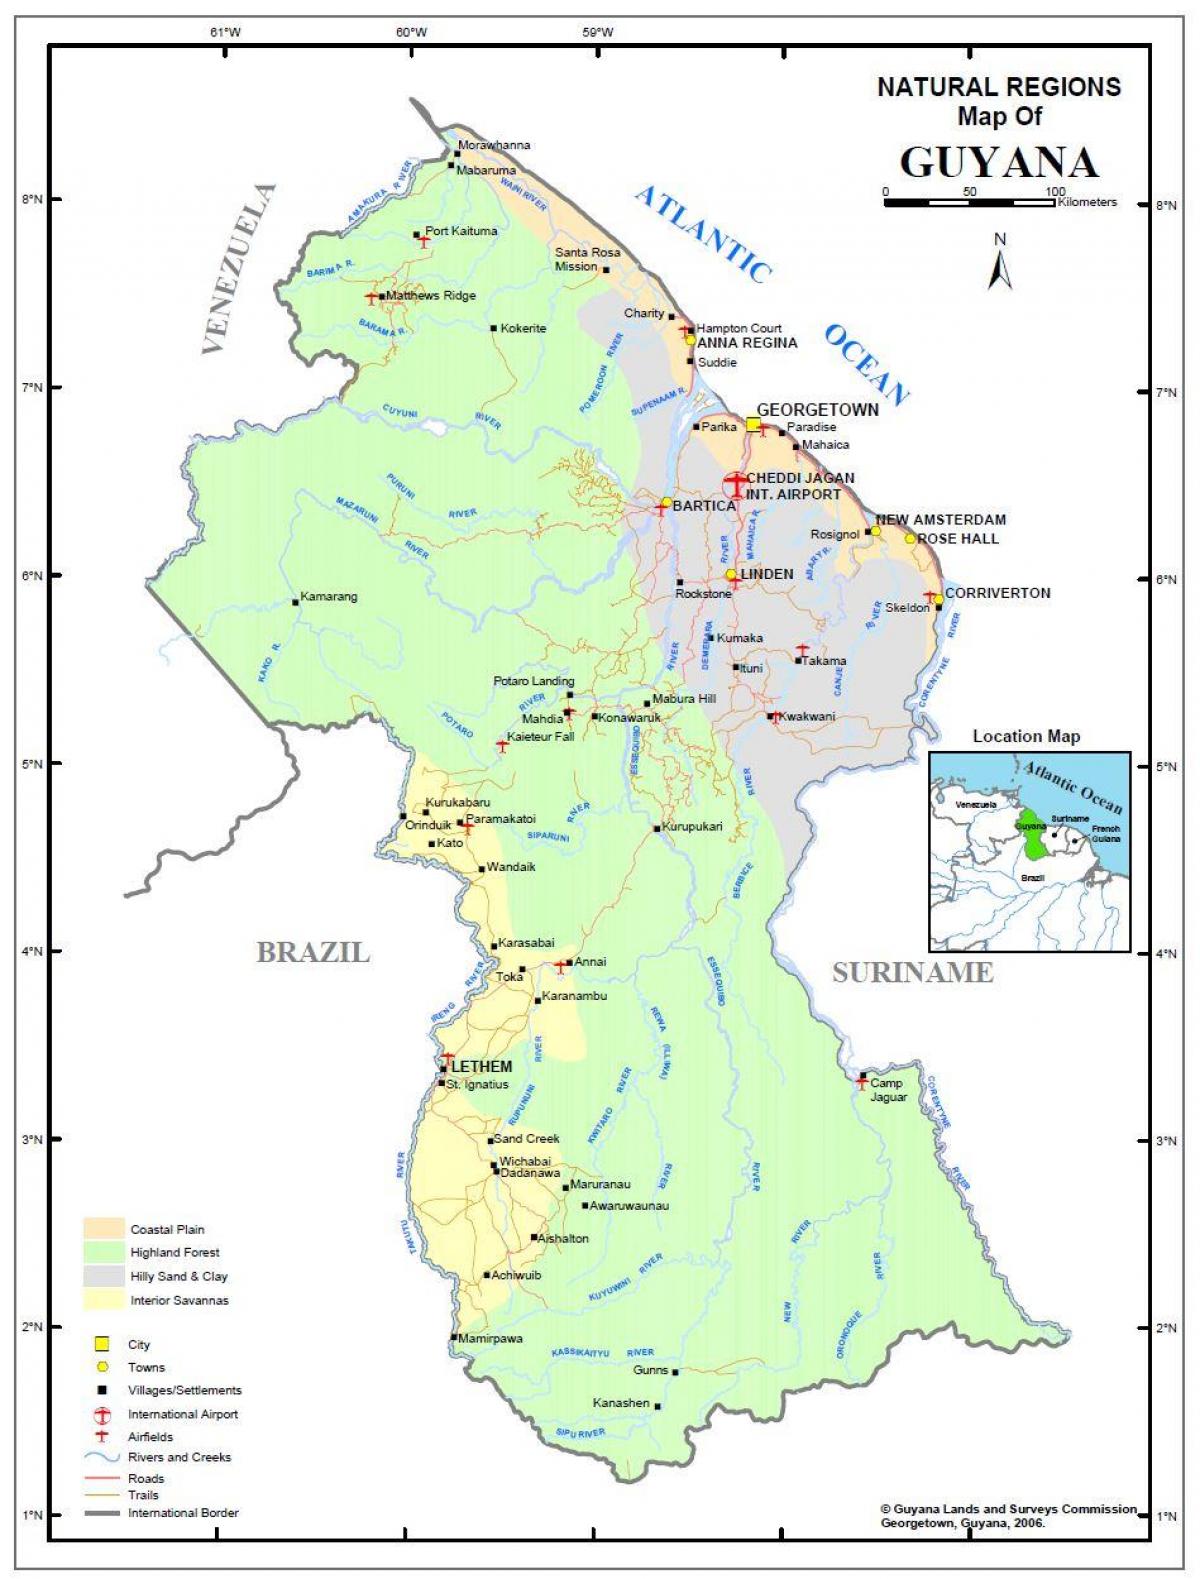 Guyana haritası 4 doğal bölgeleri gösteren 